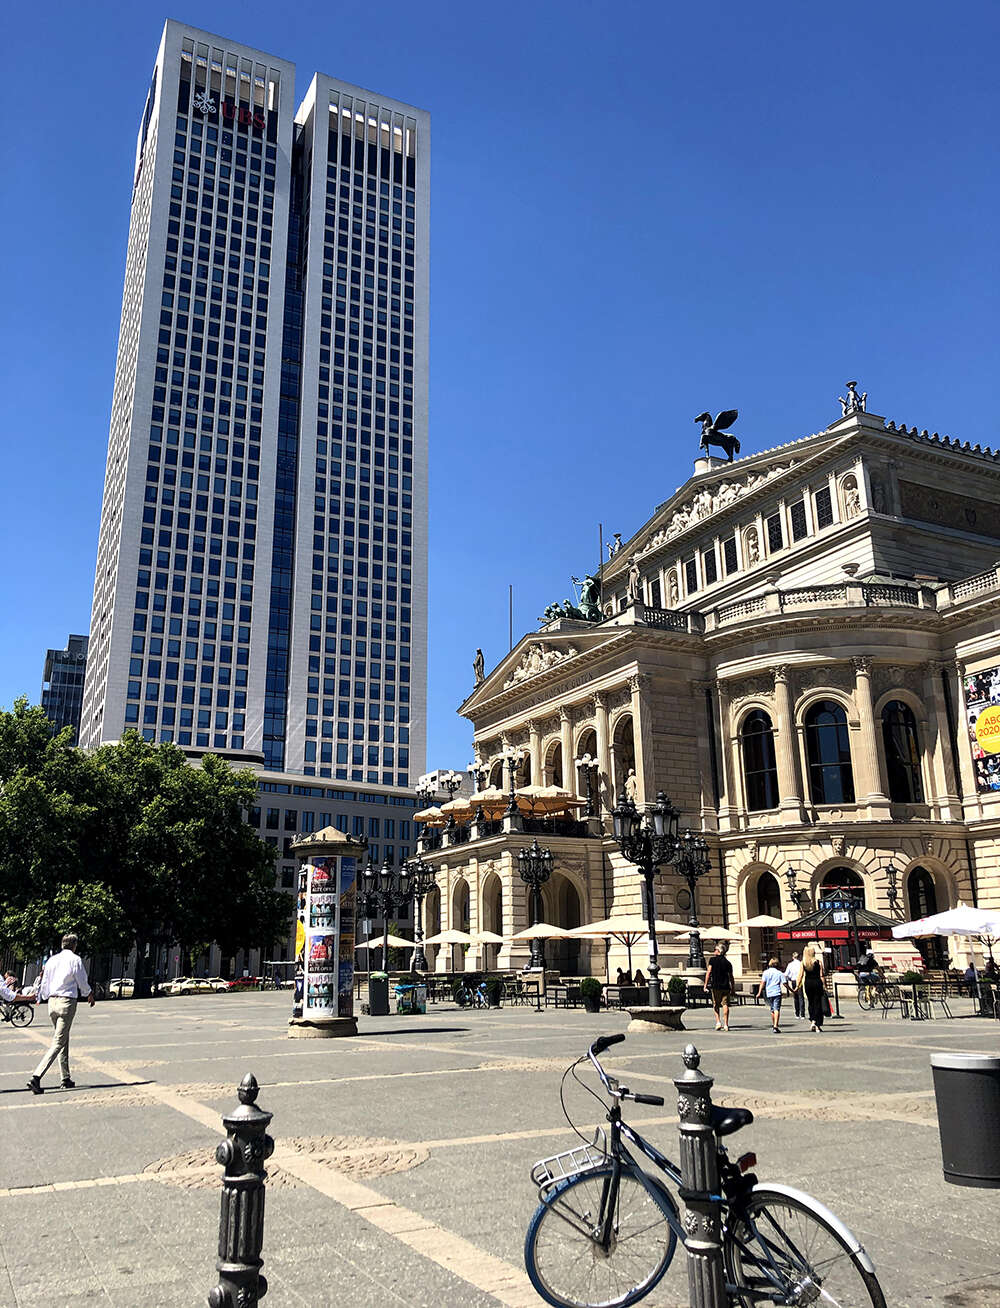 The Alte Oper 